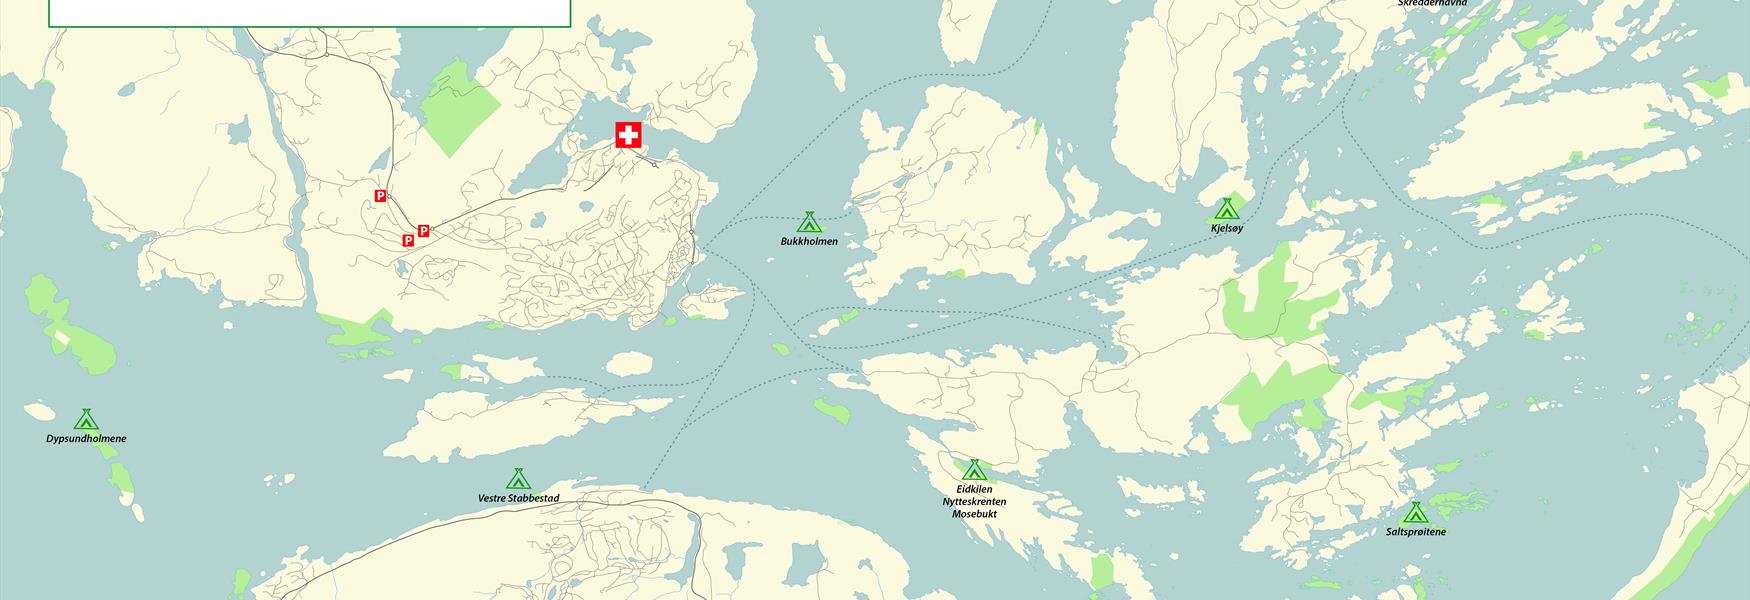 Kart over anbefalte teltplasser i Kragerø